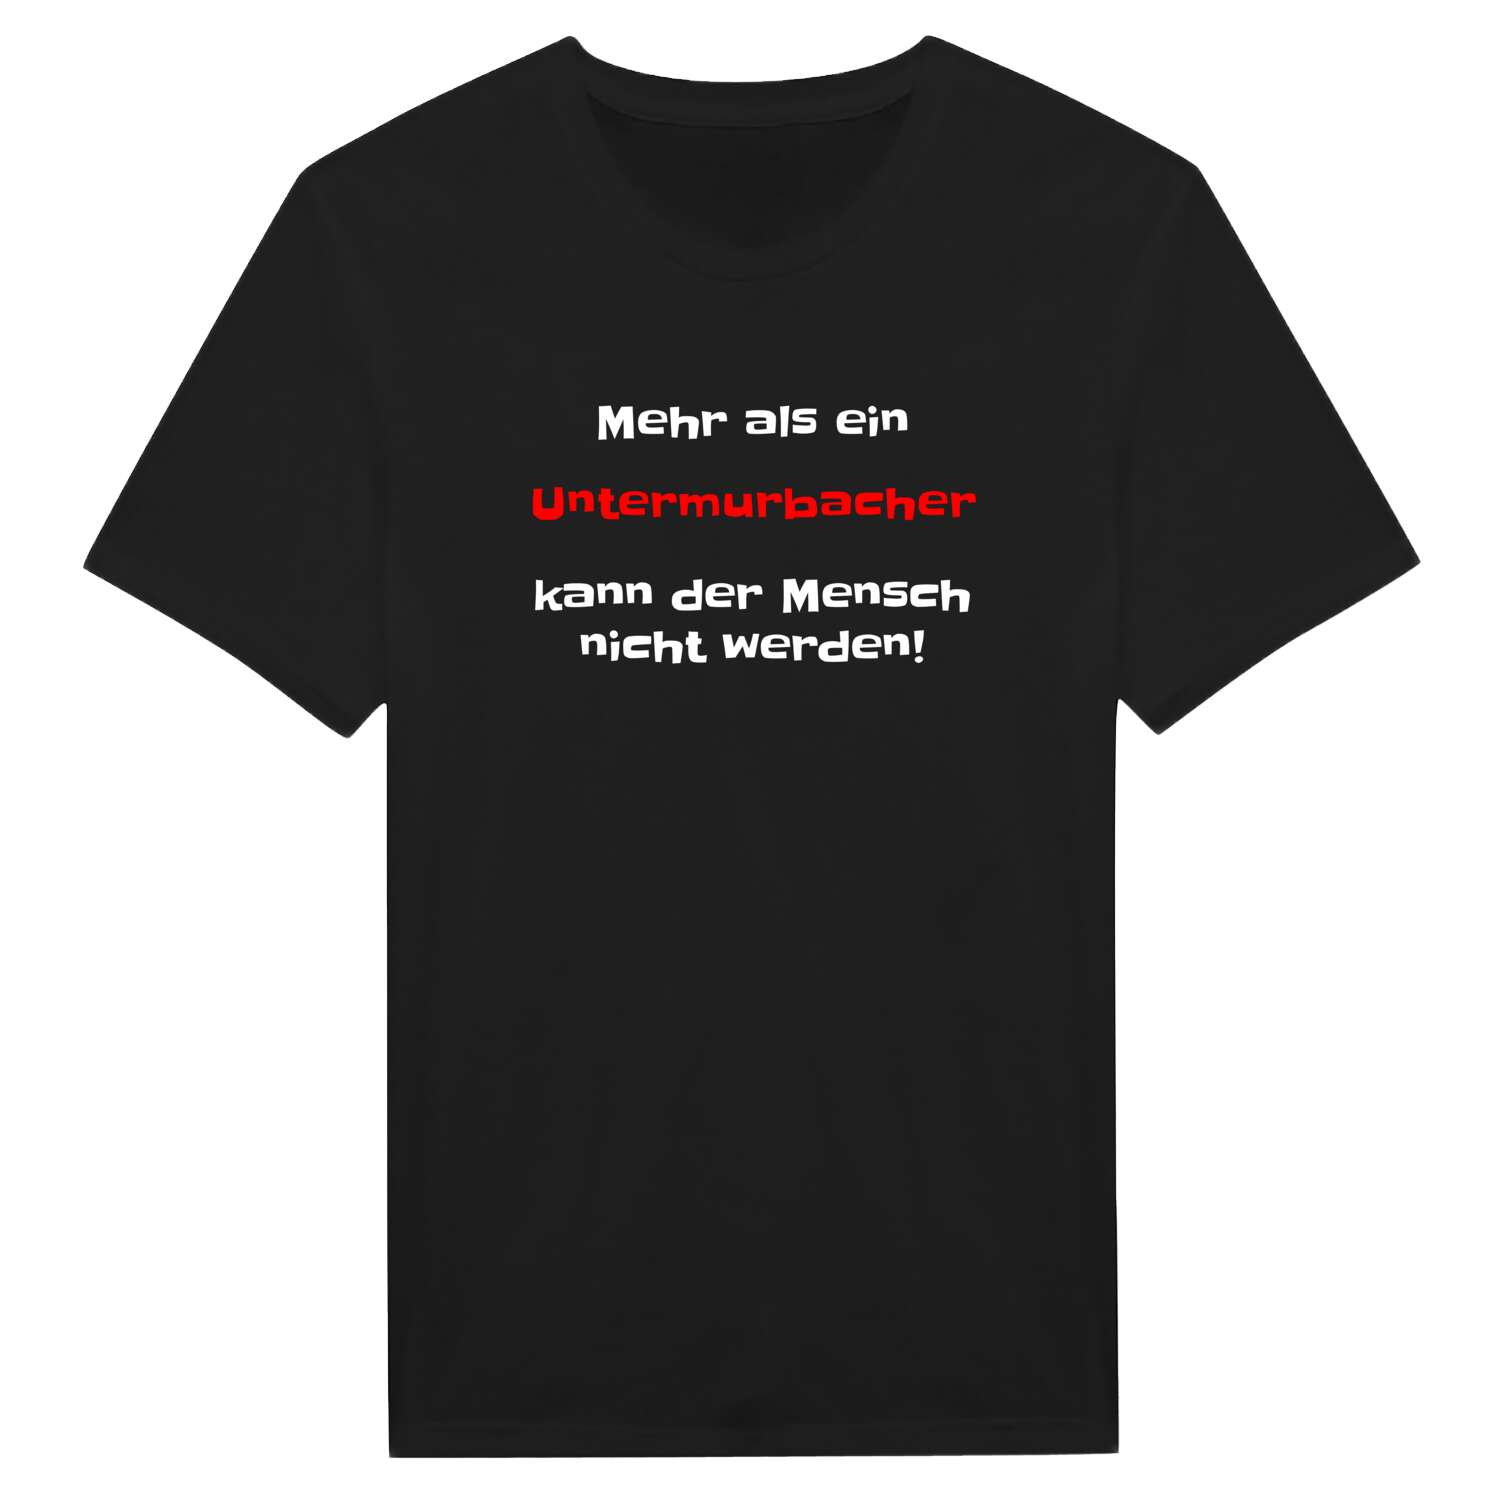 Untermurbach T-Shirt »Mehr als ein«